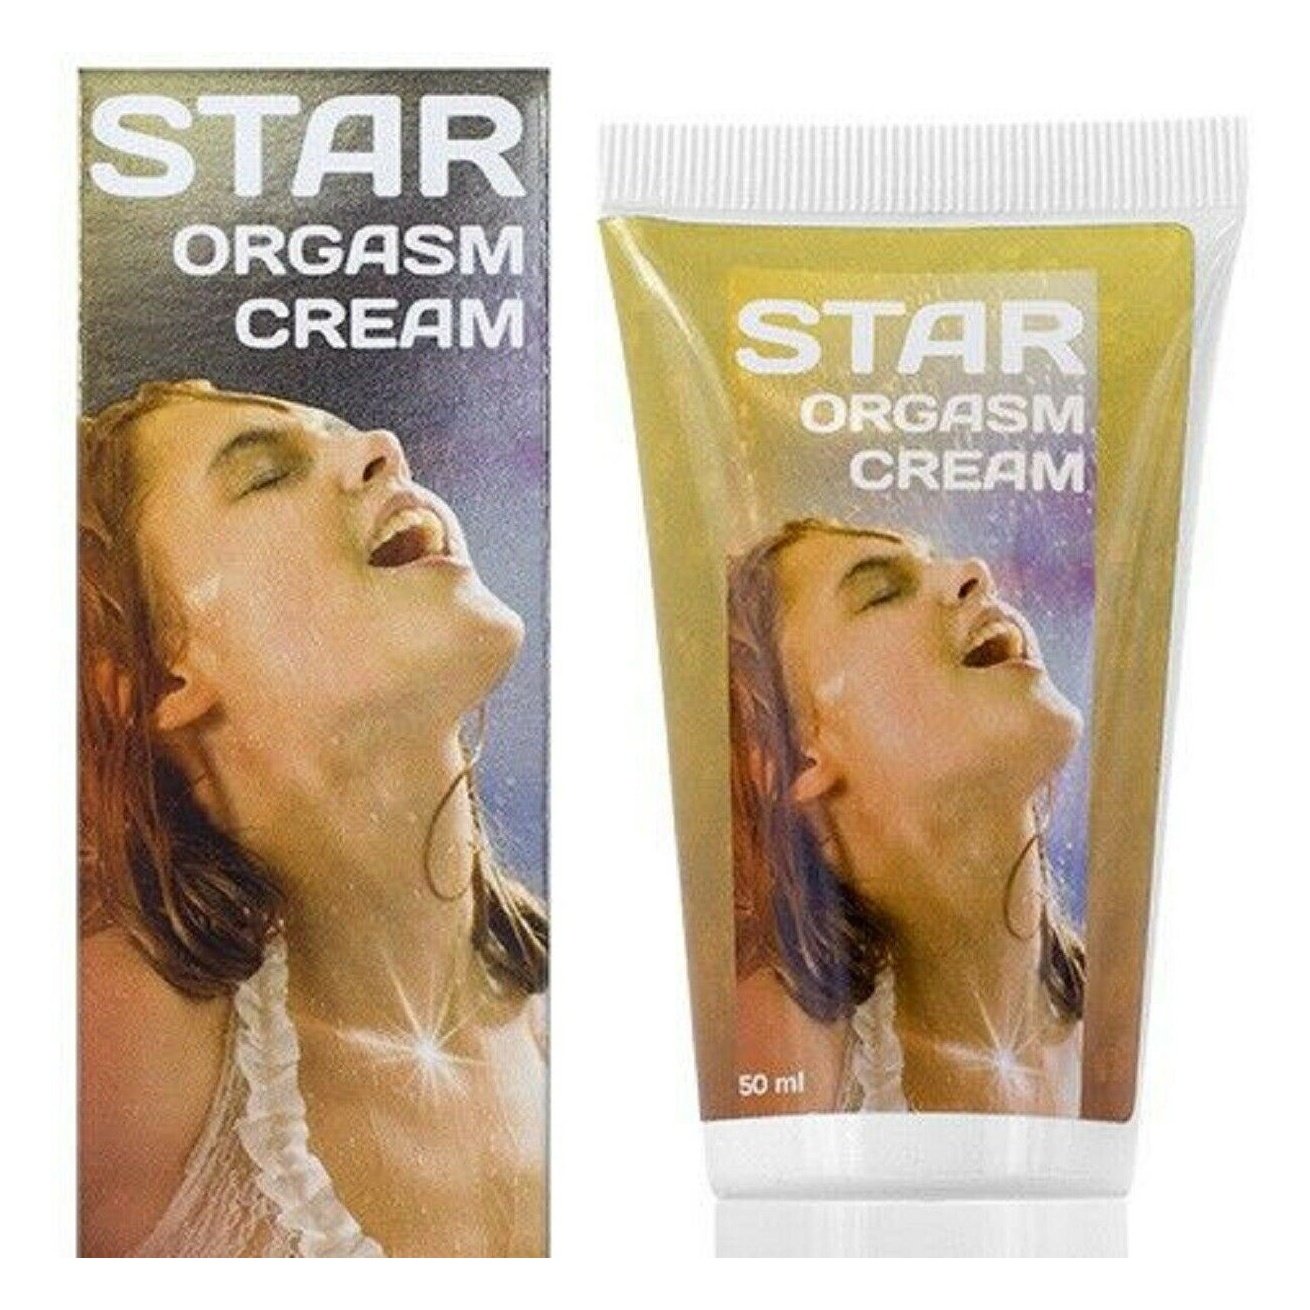 Star Orgasm Cream Female Enhancer Climax Arousal Intensify 1,7 fl oz 50 ml 